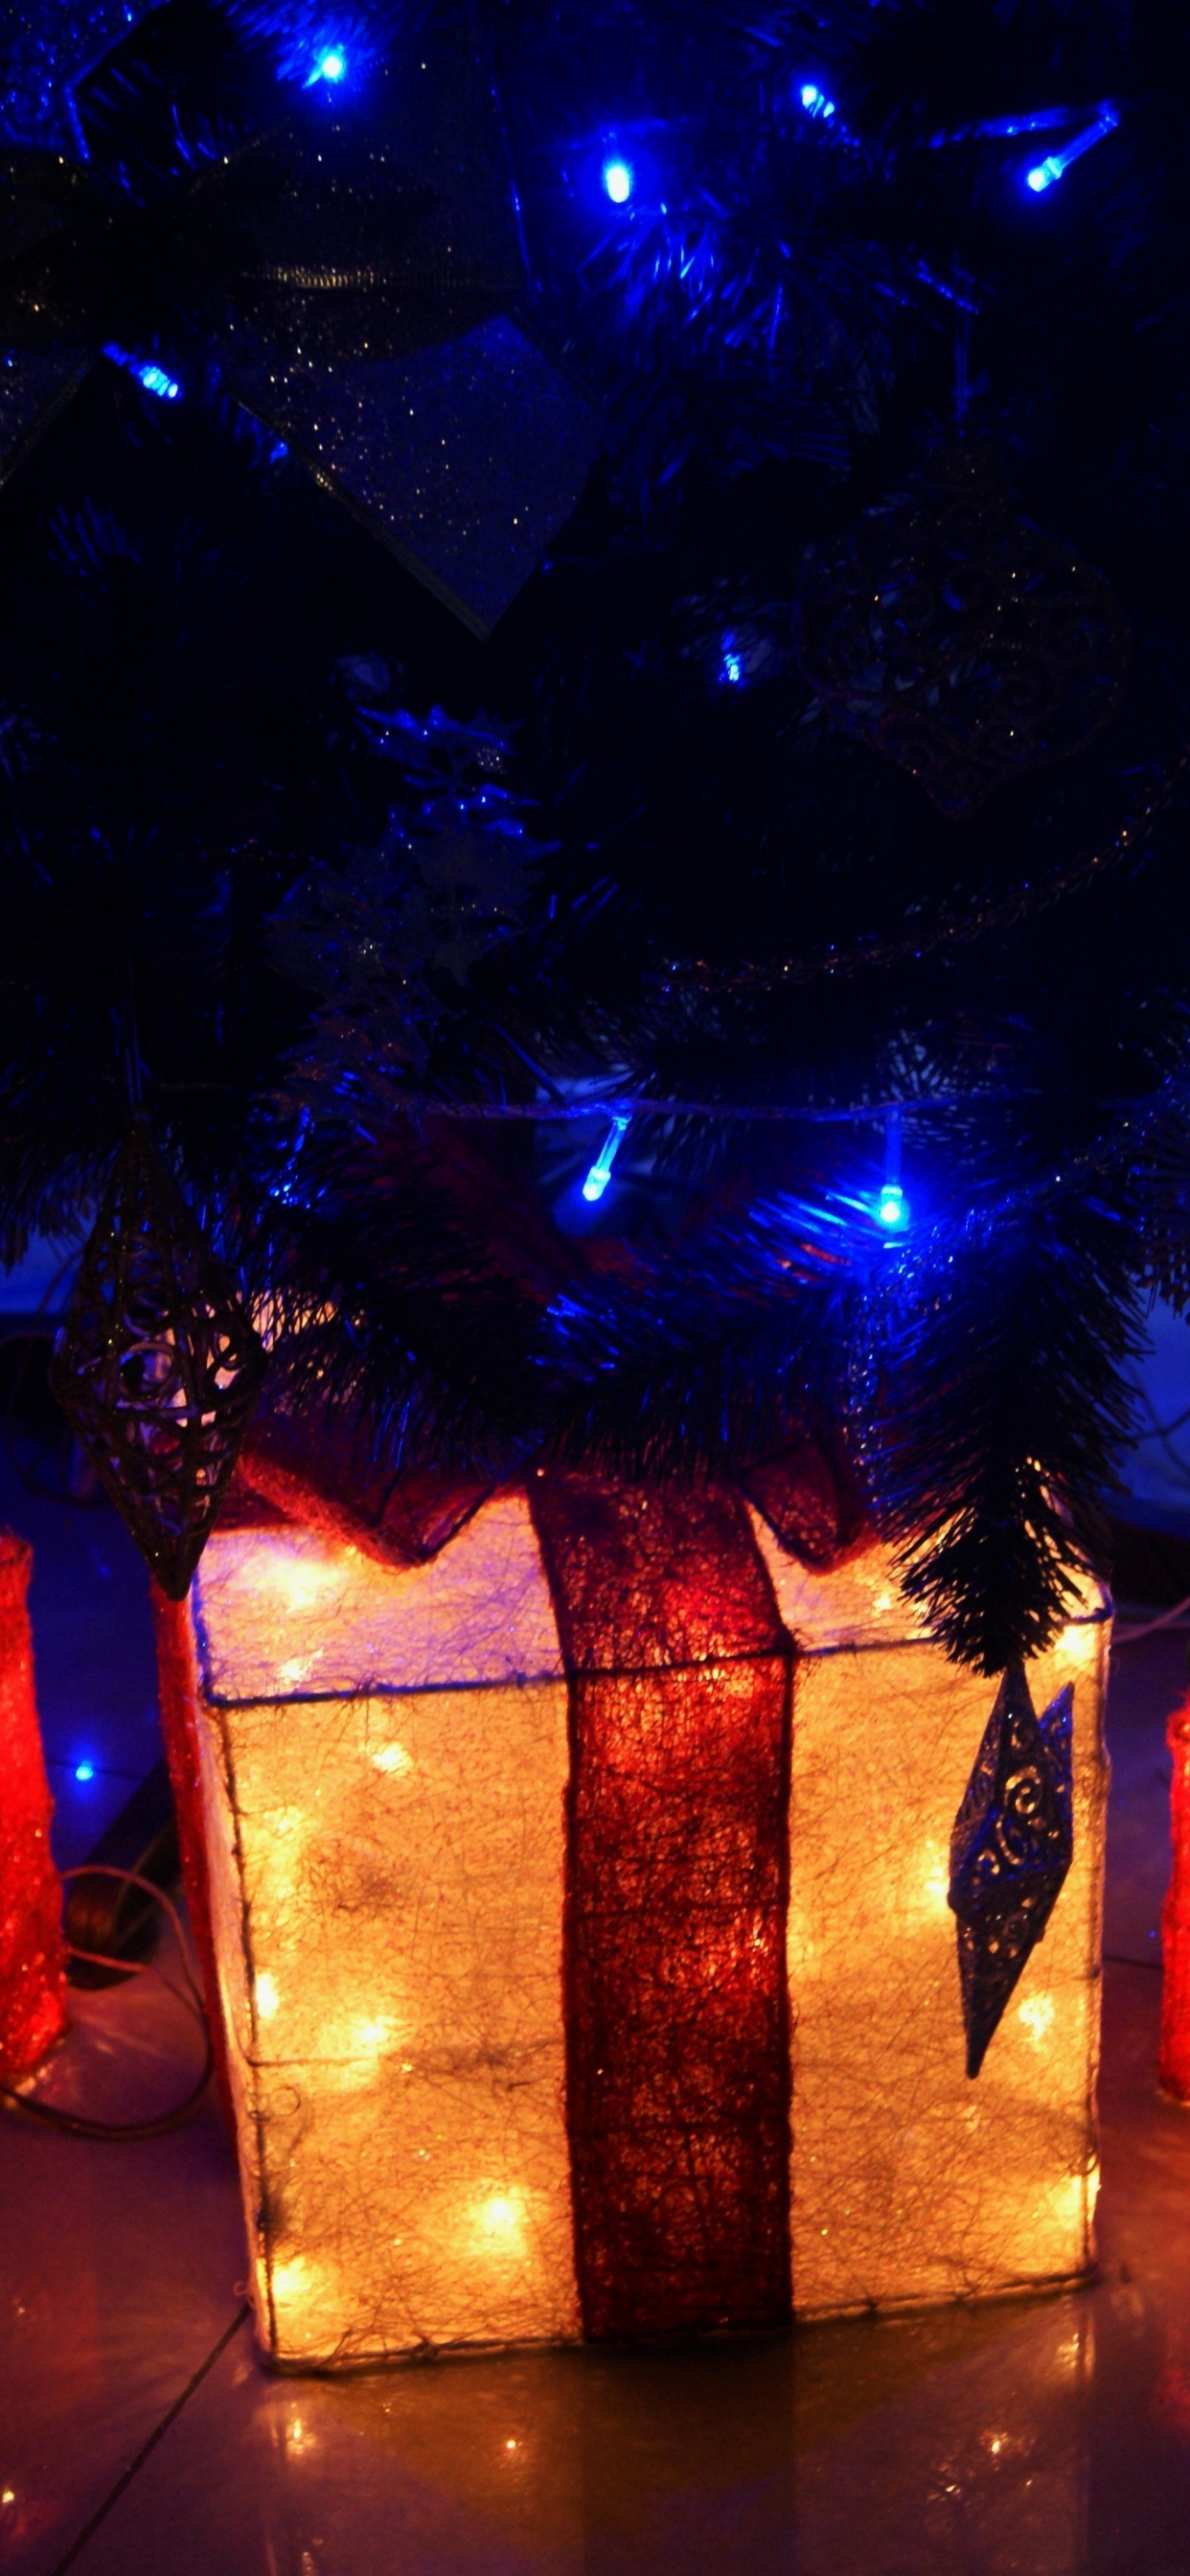 Licht, Weihnachtsbeleuchtung, Neujahr, Weihnachten, Neujahr Baum. Wallpaper in 1242x2688 Resolution